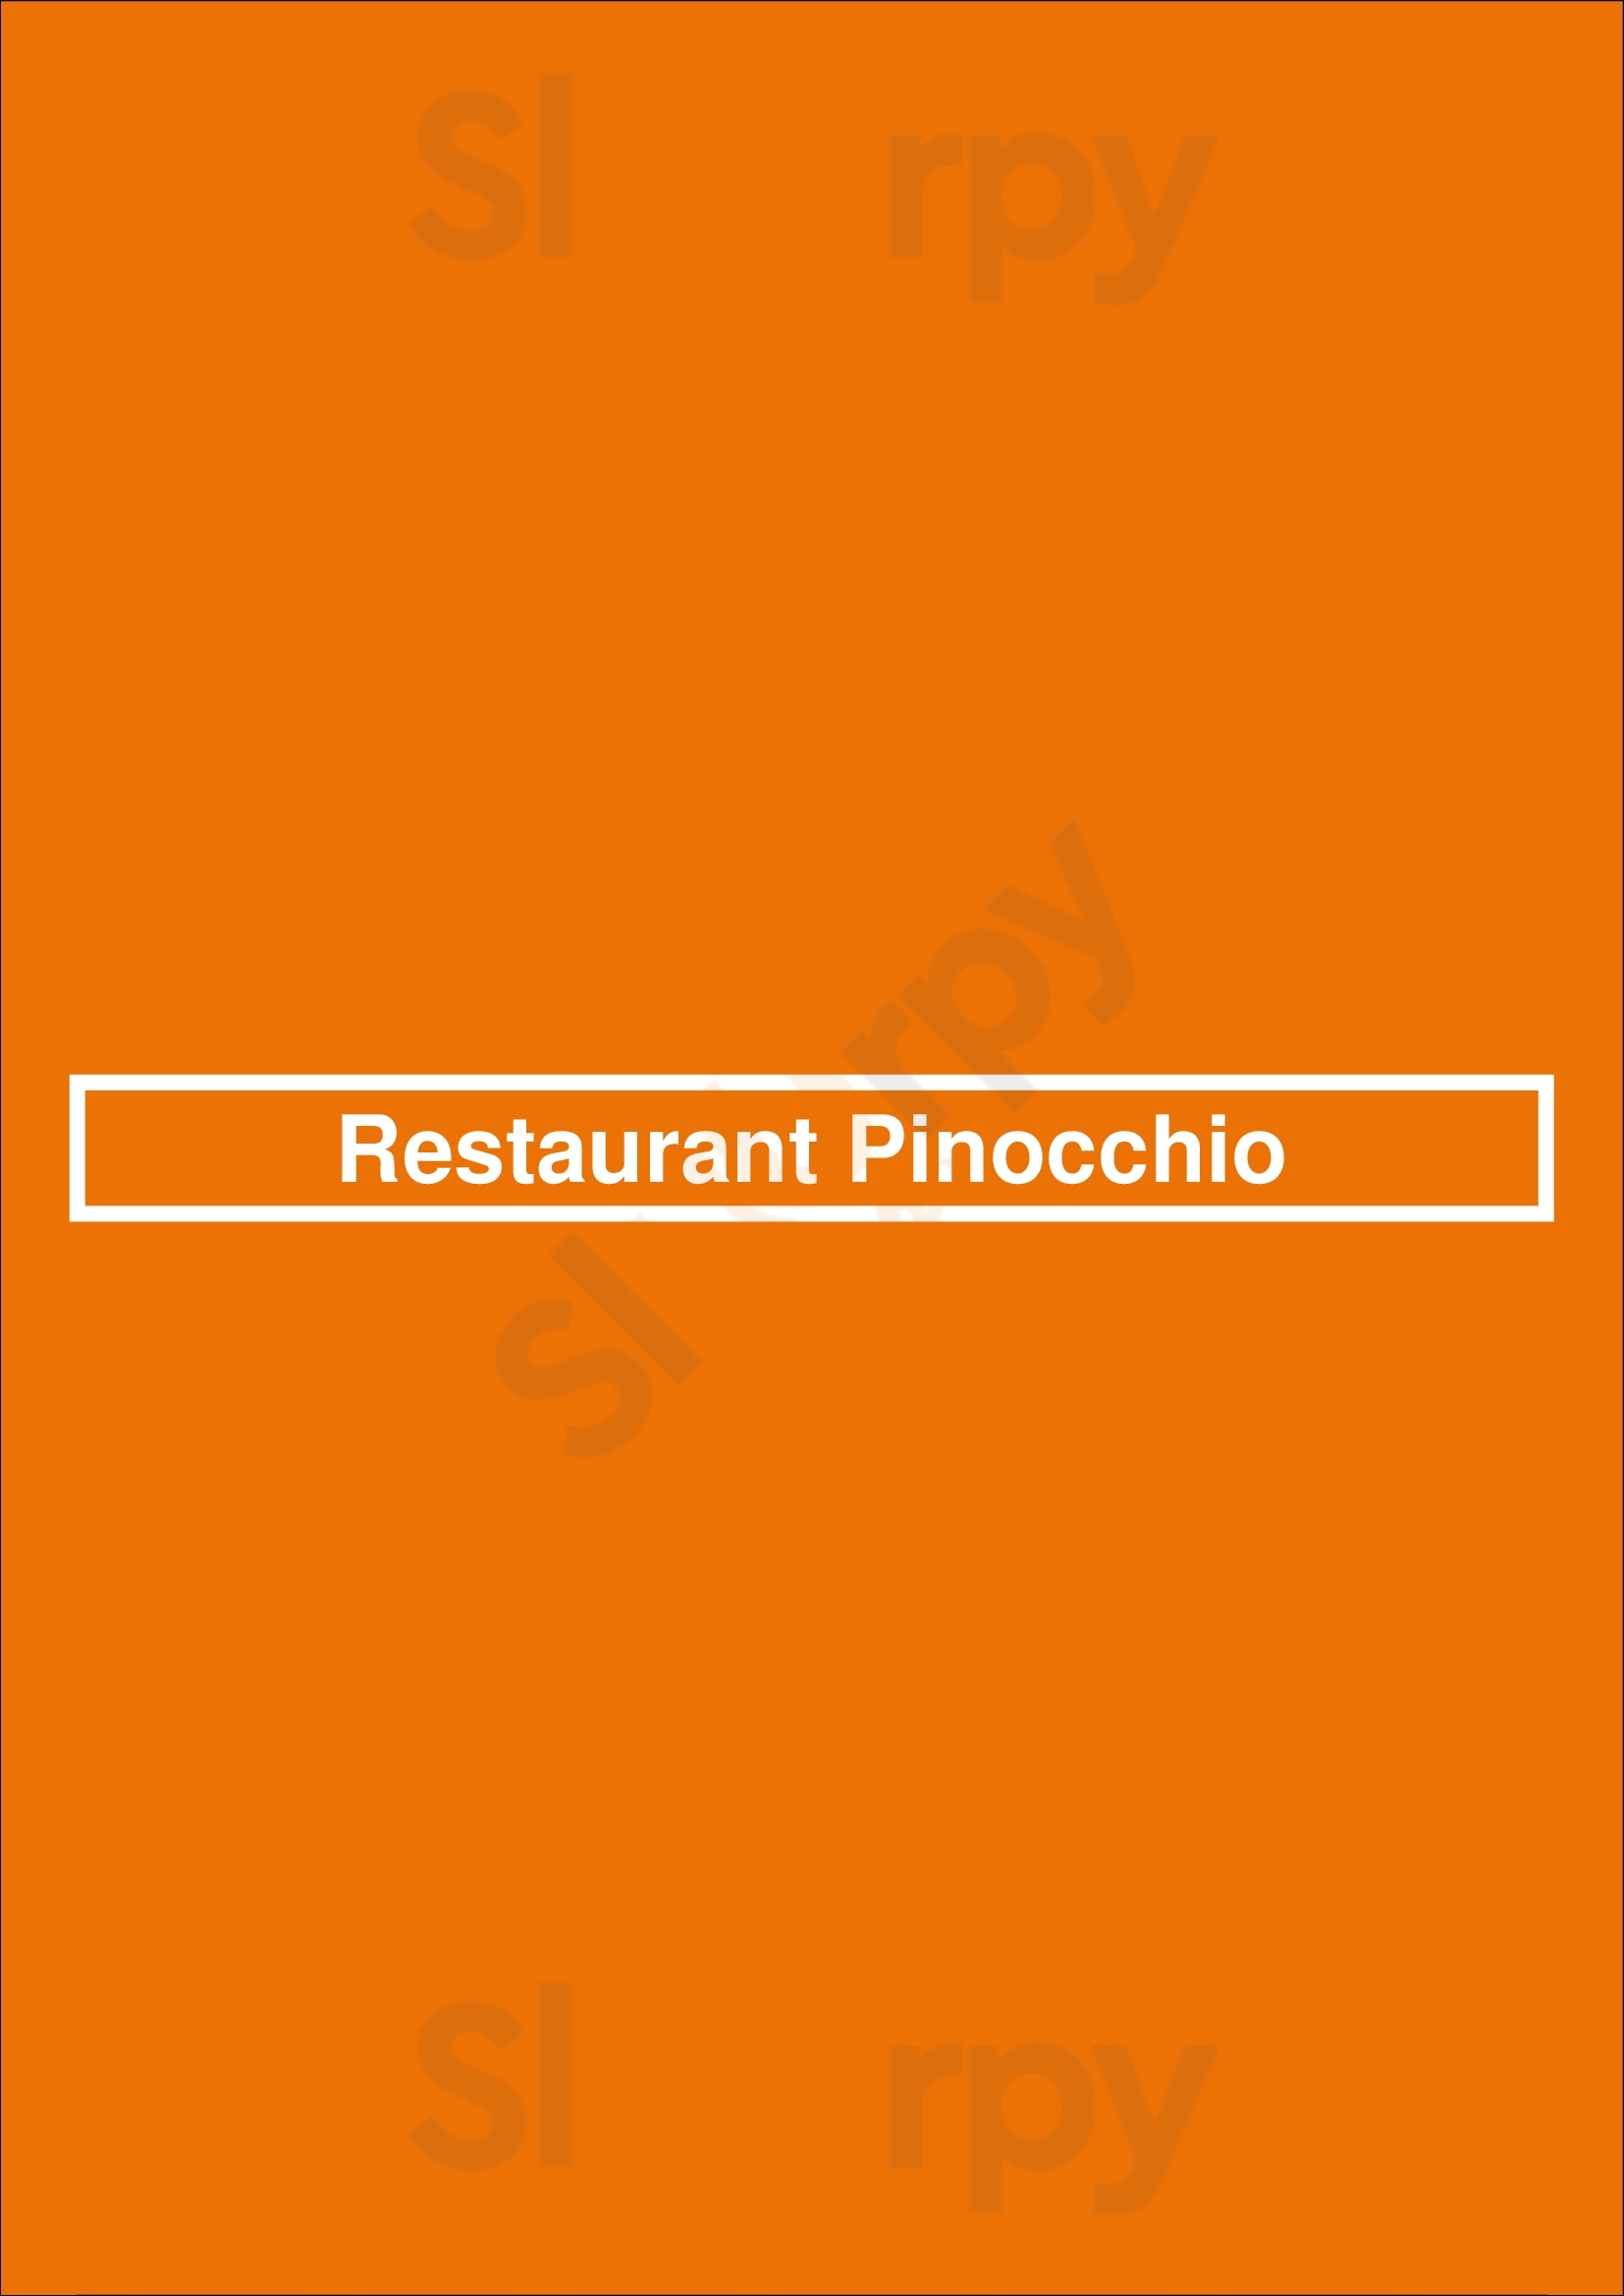 Restaurant Pinocchio Magog Menu - 1